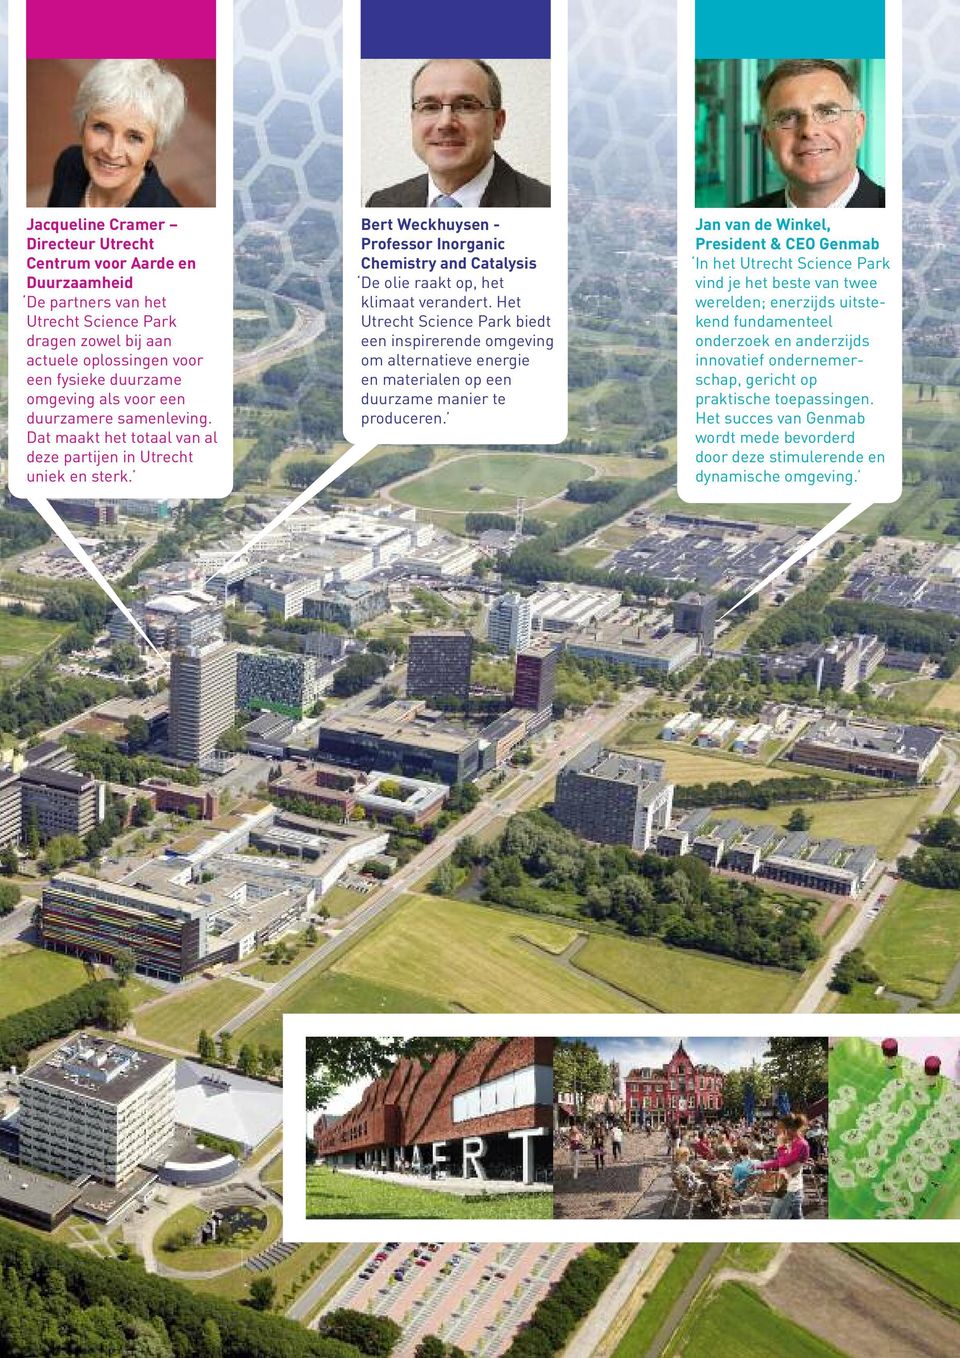 Het Utrecht Science Park biedt een inspirerende omgeving om alternatieve energie en materialen op een duurzame manier te produceren.